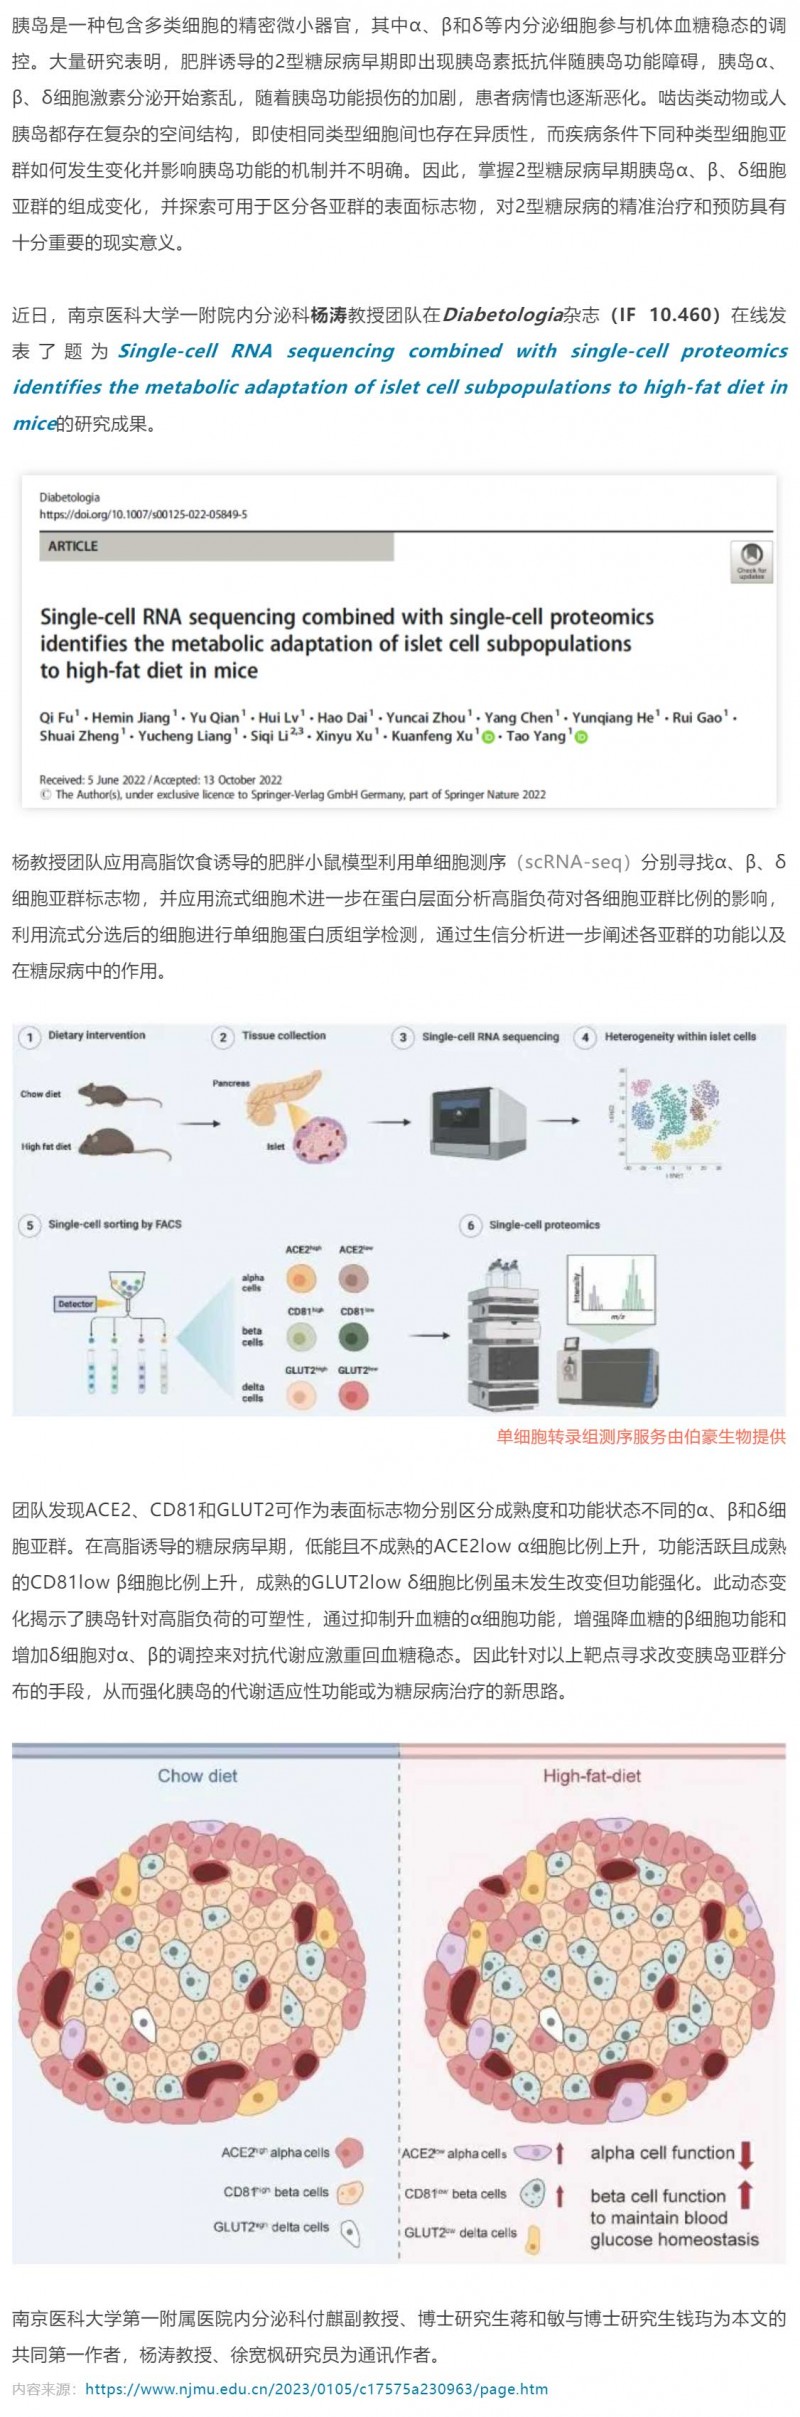 2023-02-01- 单细胞项目文章 -_- 杨涛团队揭示高脂喂养小鼠胰岛细胞亚群的特征